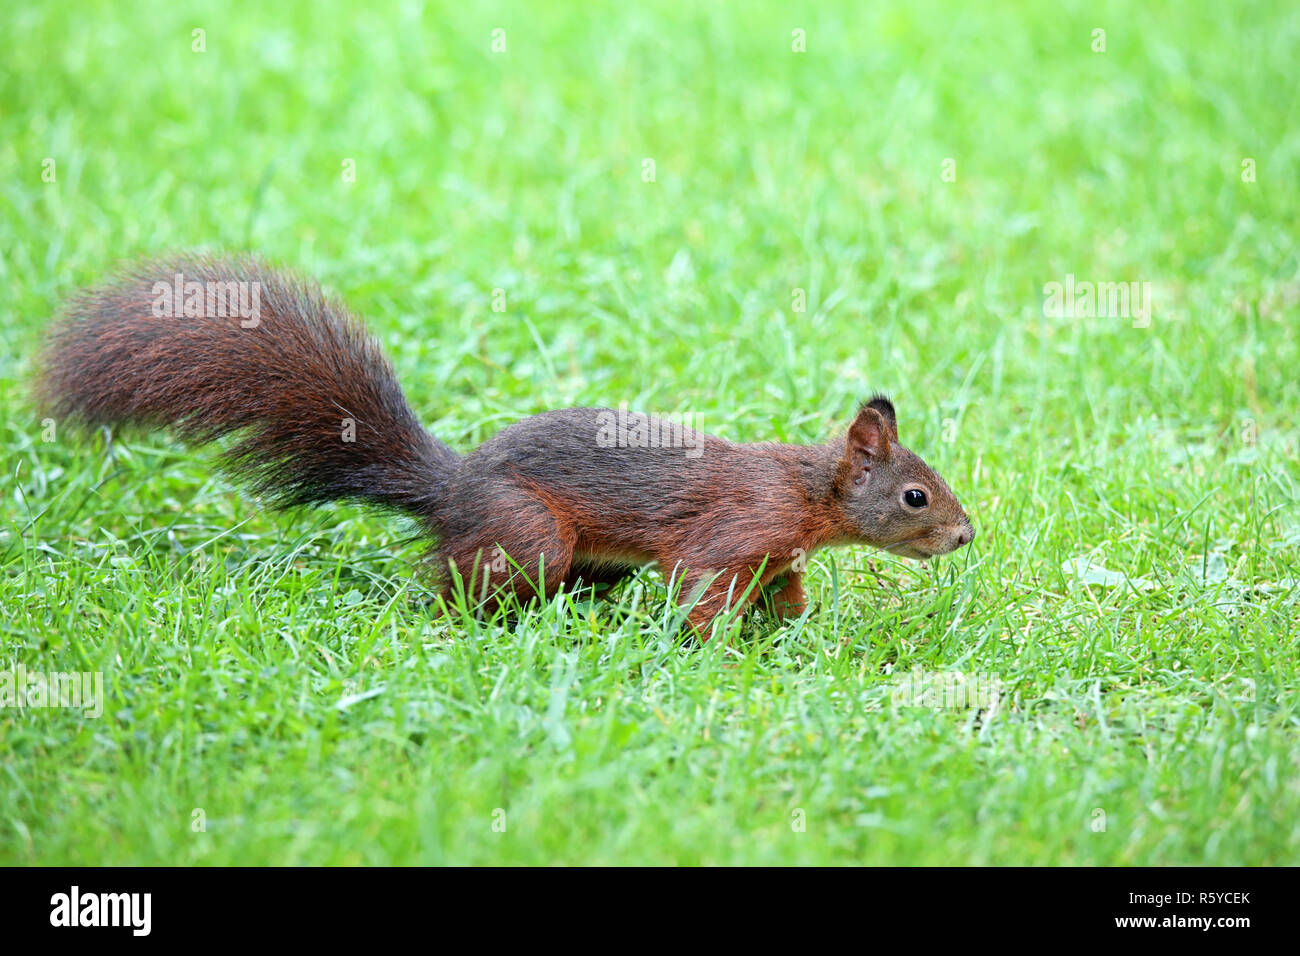 curious squirrel sciurus vulgaris in the grass Stock Photo